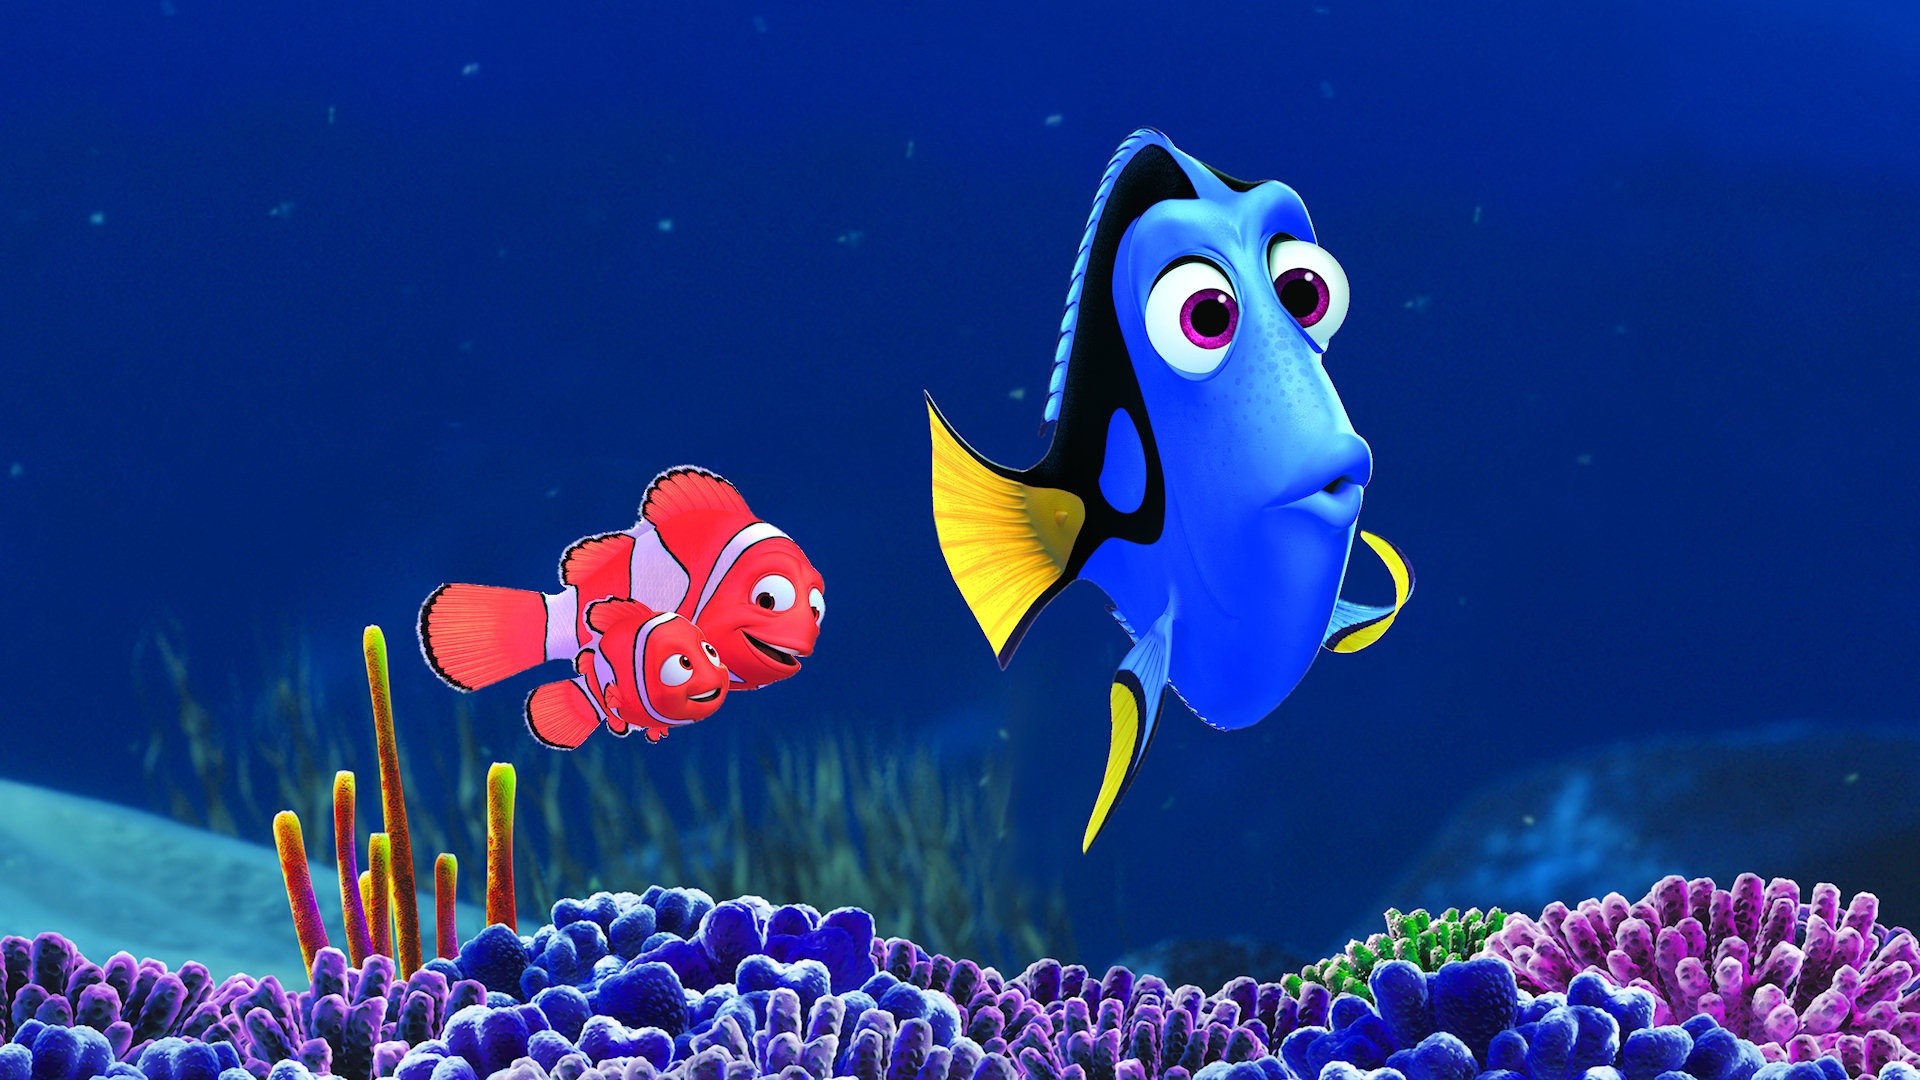 Finding Nemo Dory Disney Wallpaper For Desktop